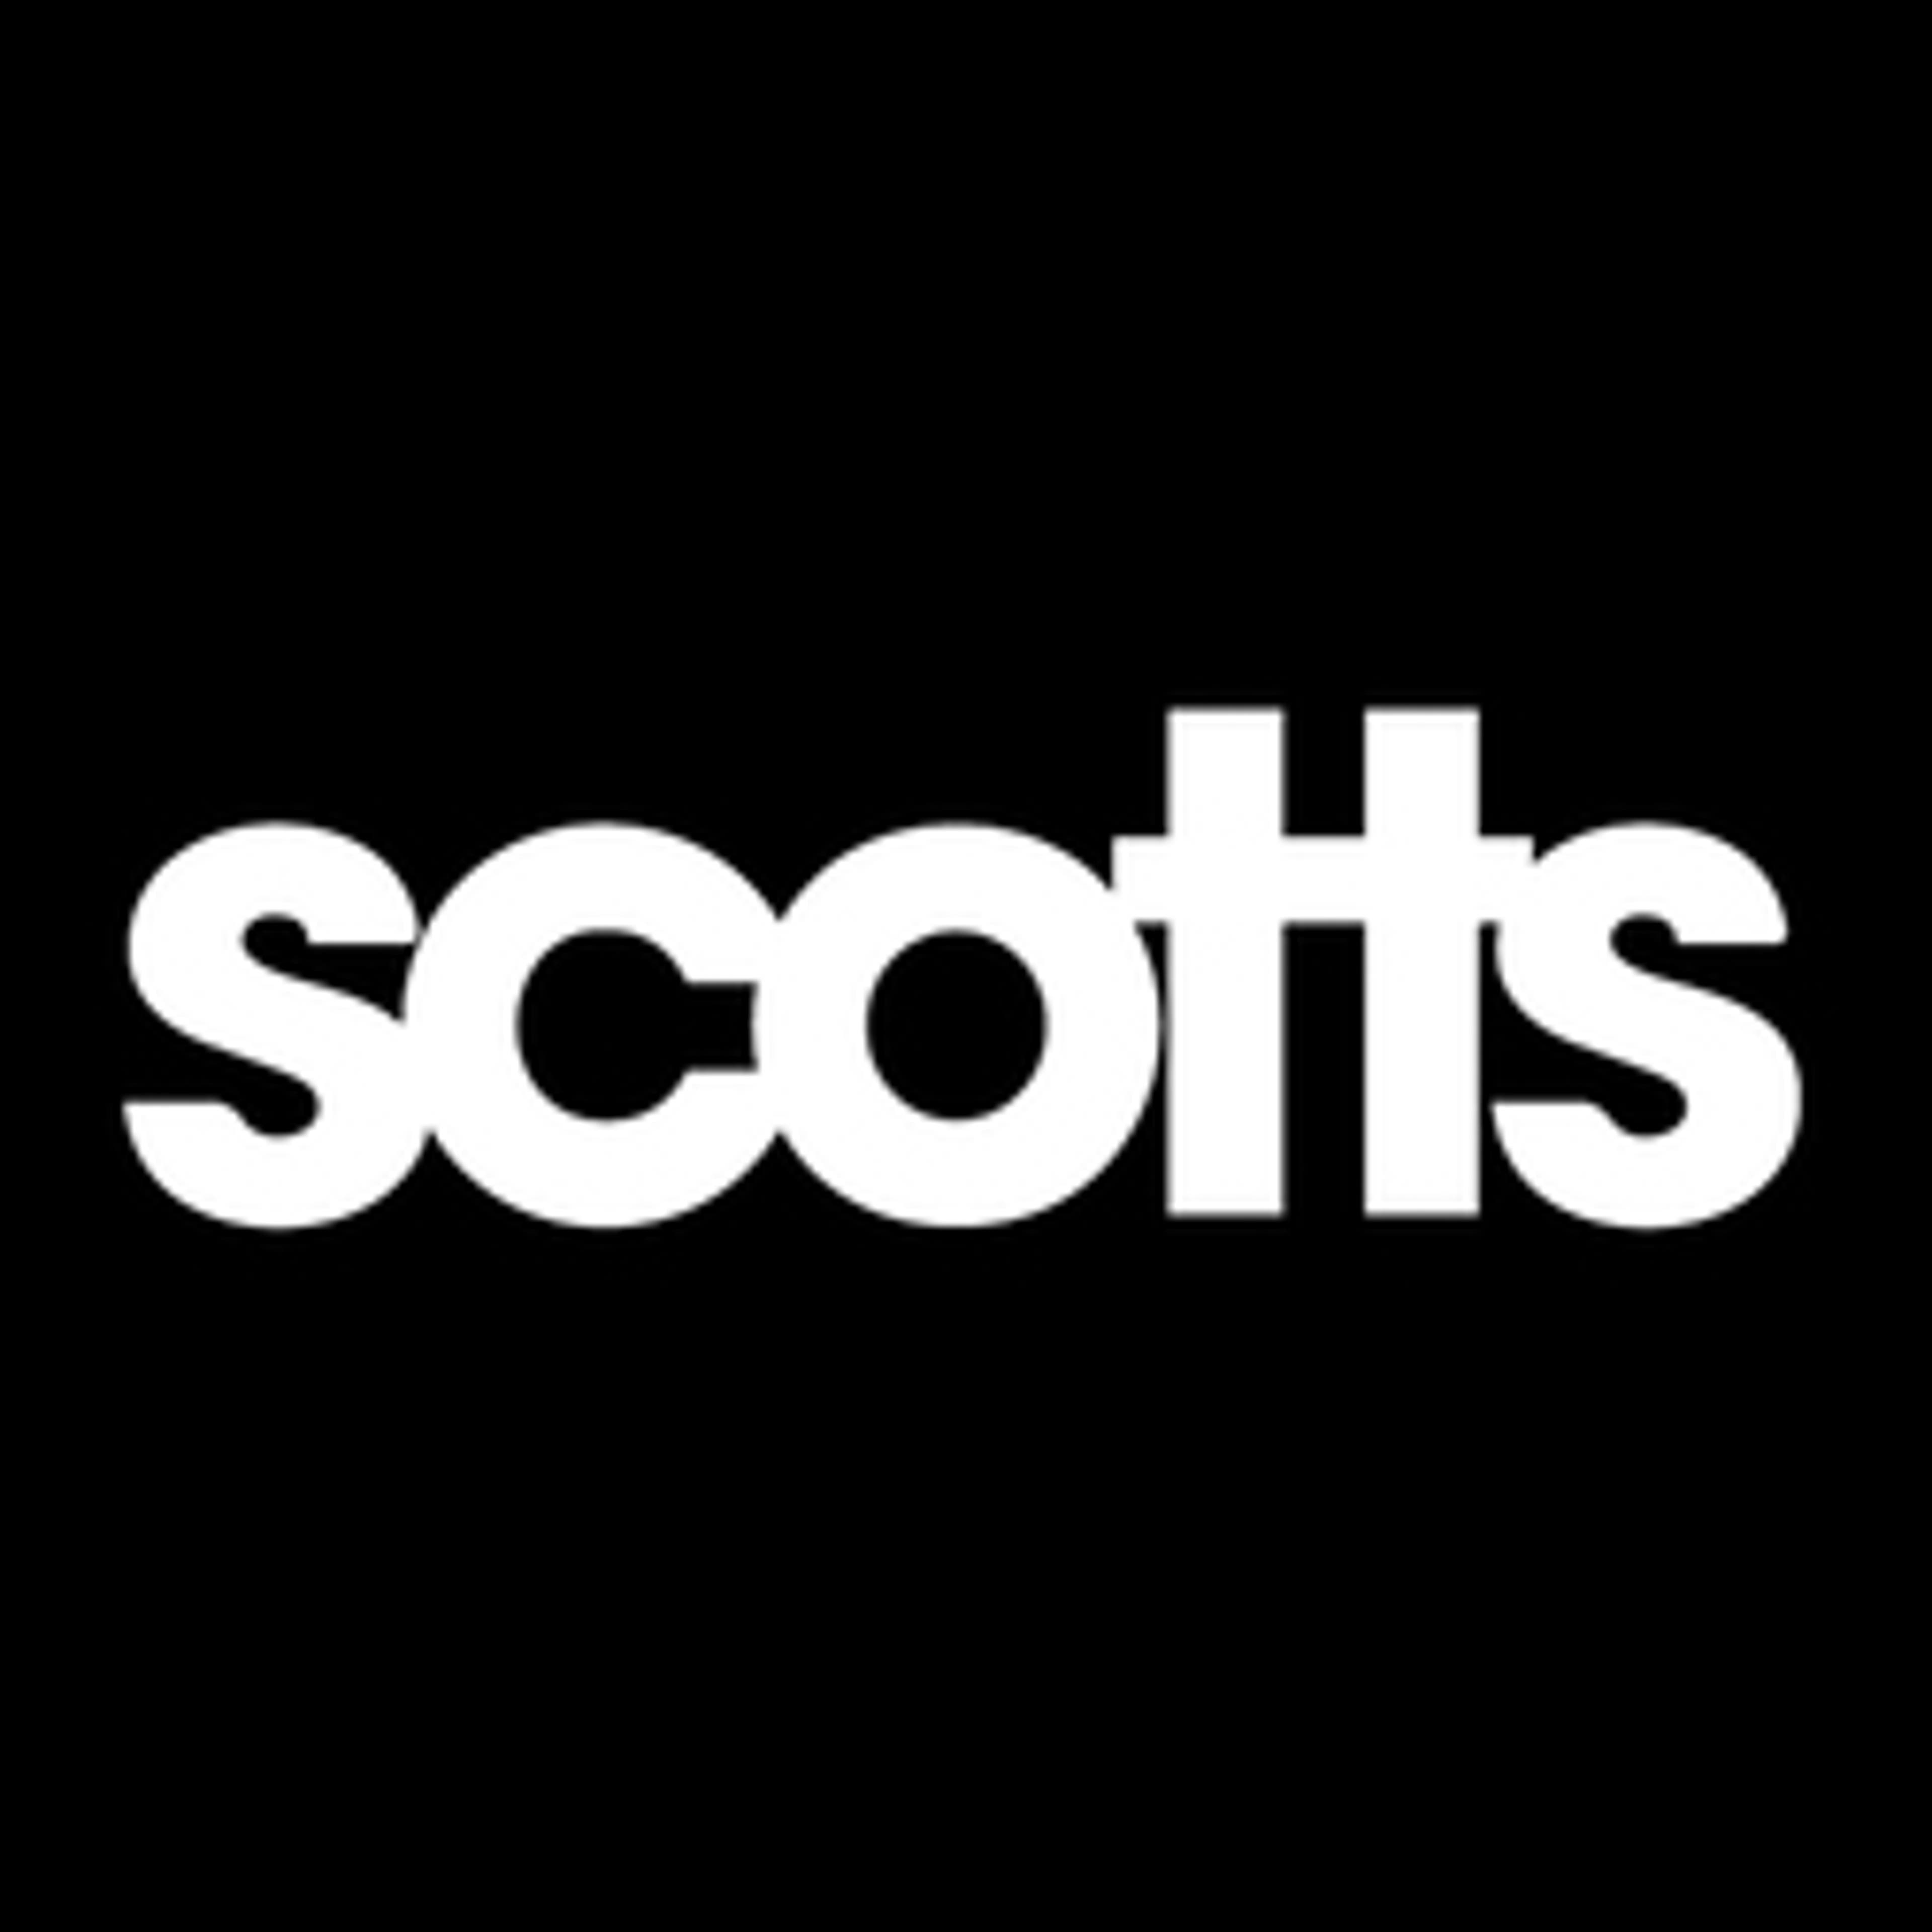  Scotts 